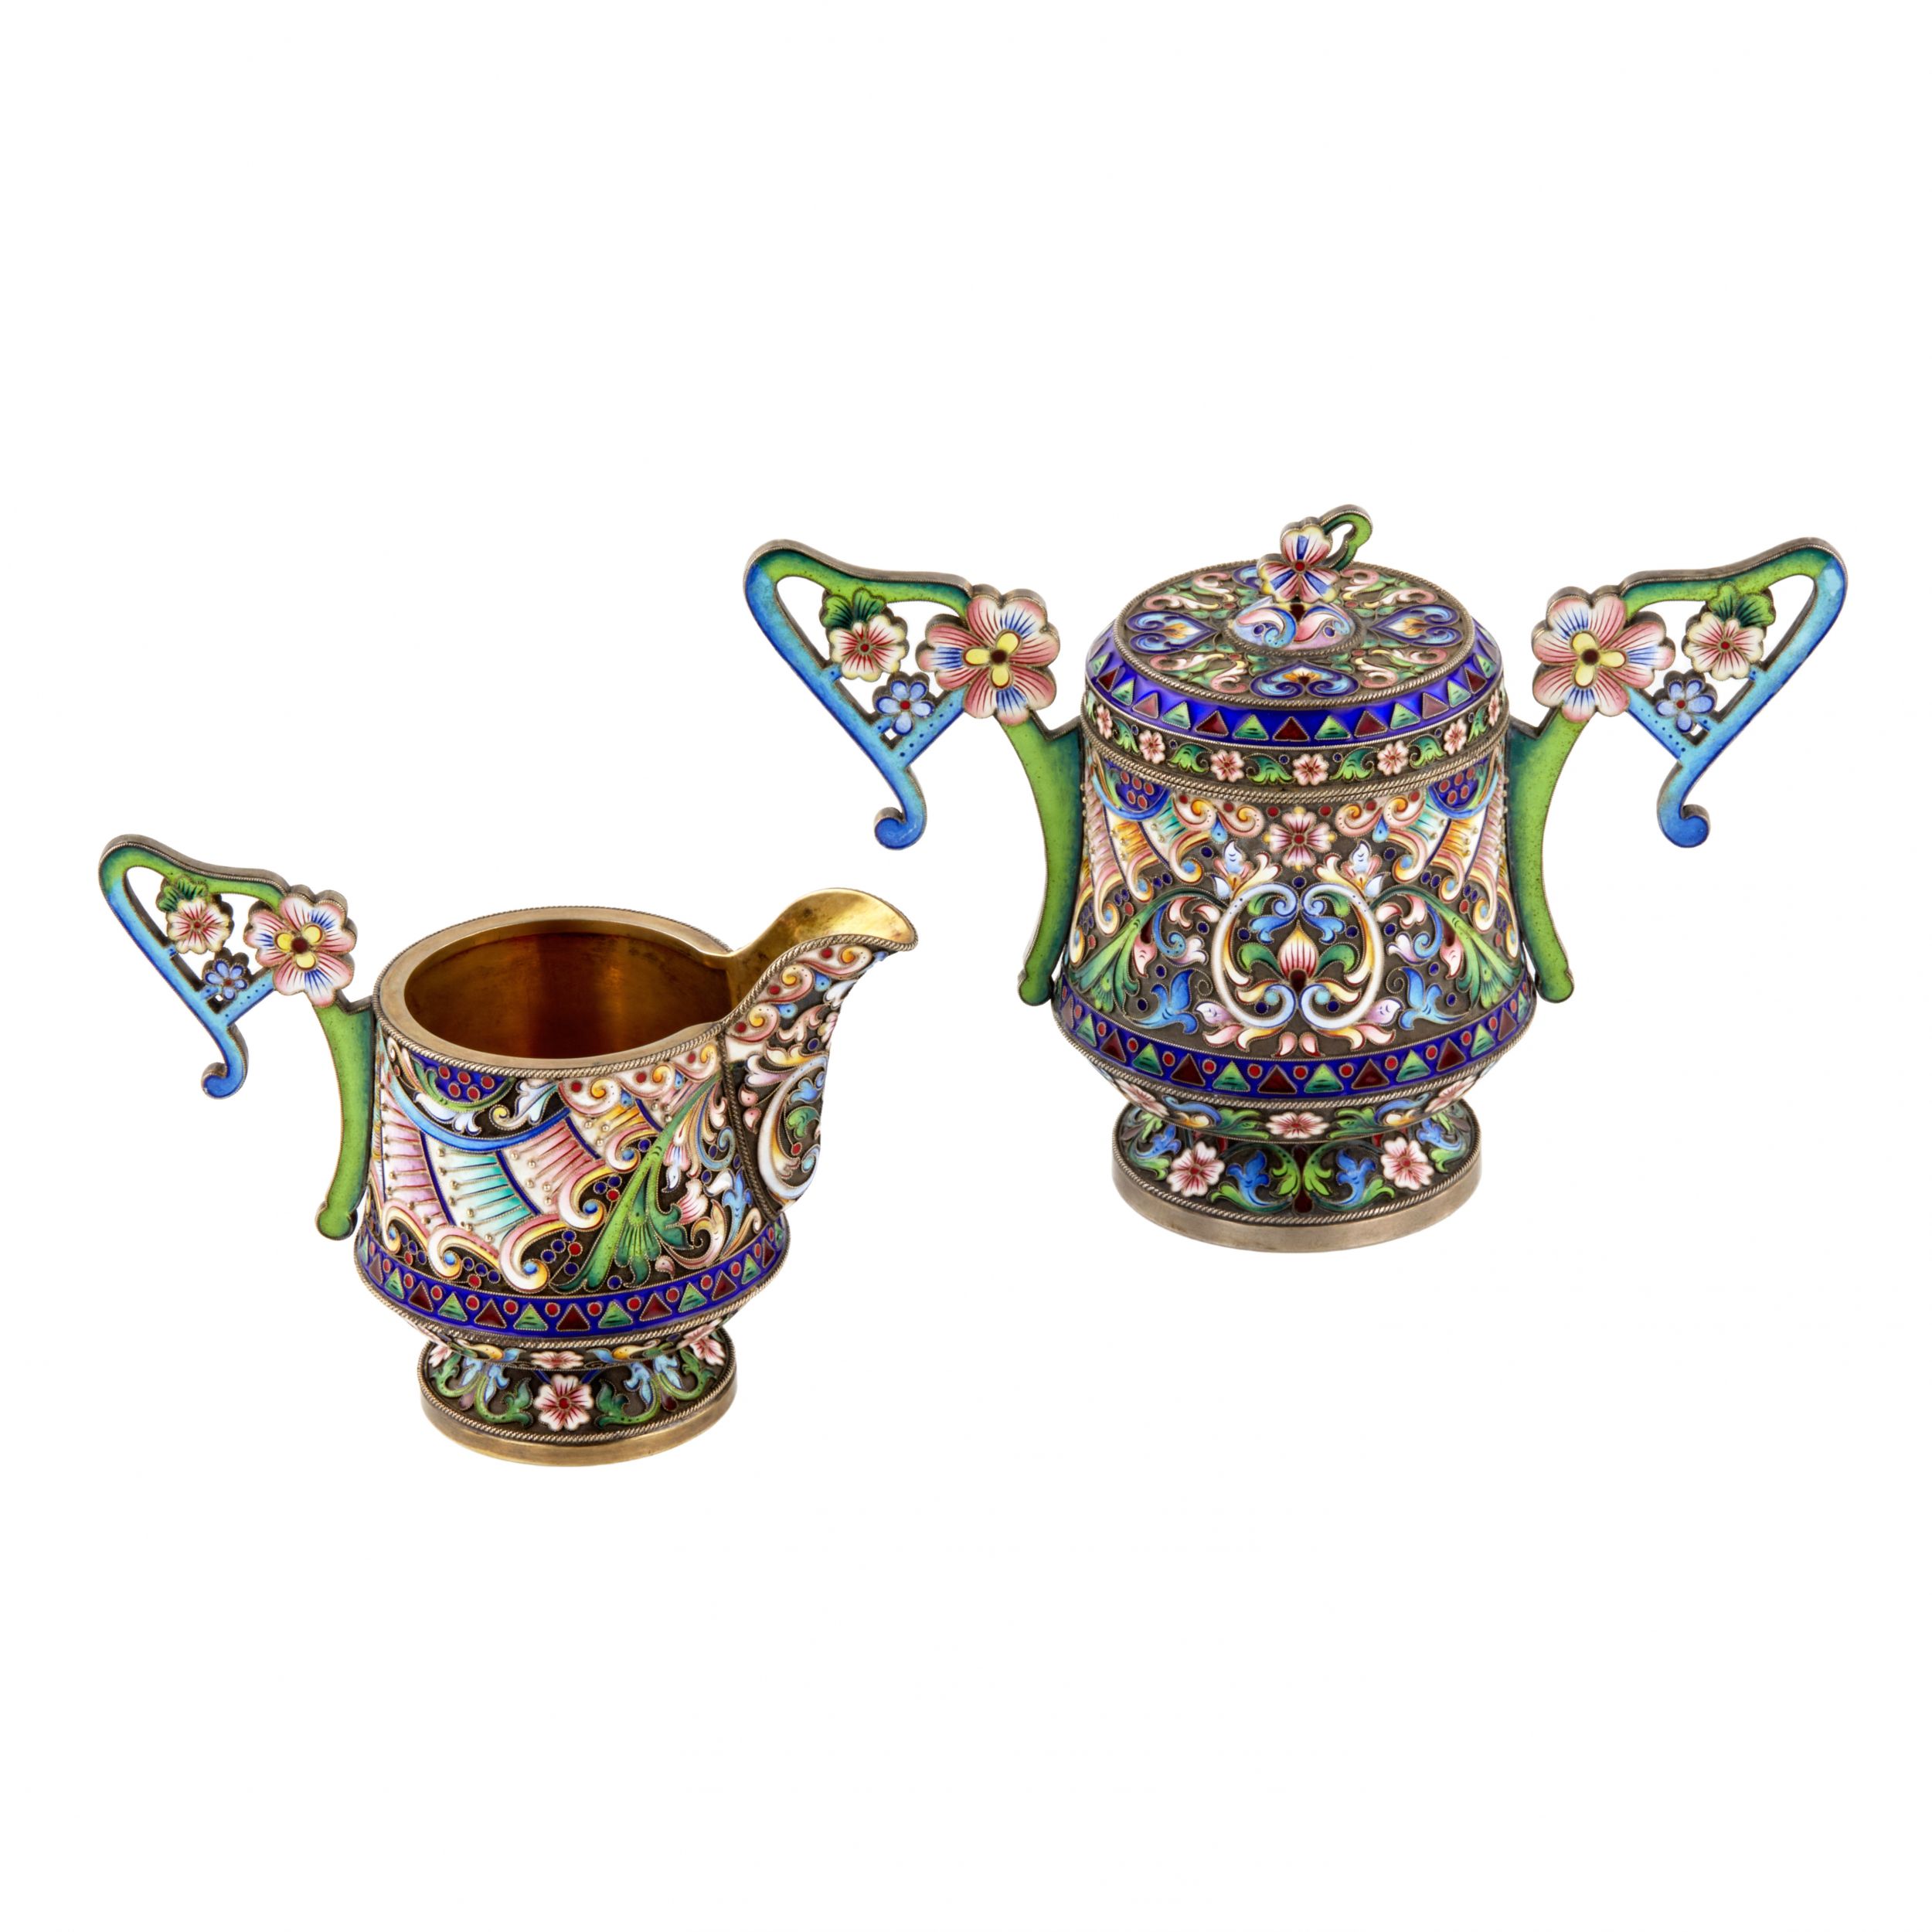 Art-Nouveau-cloisonne-enamel-Russian-silver-creamer-and-sugar-bowl-